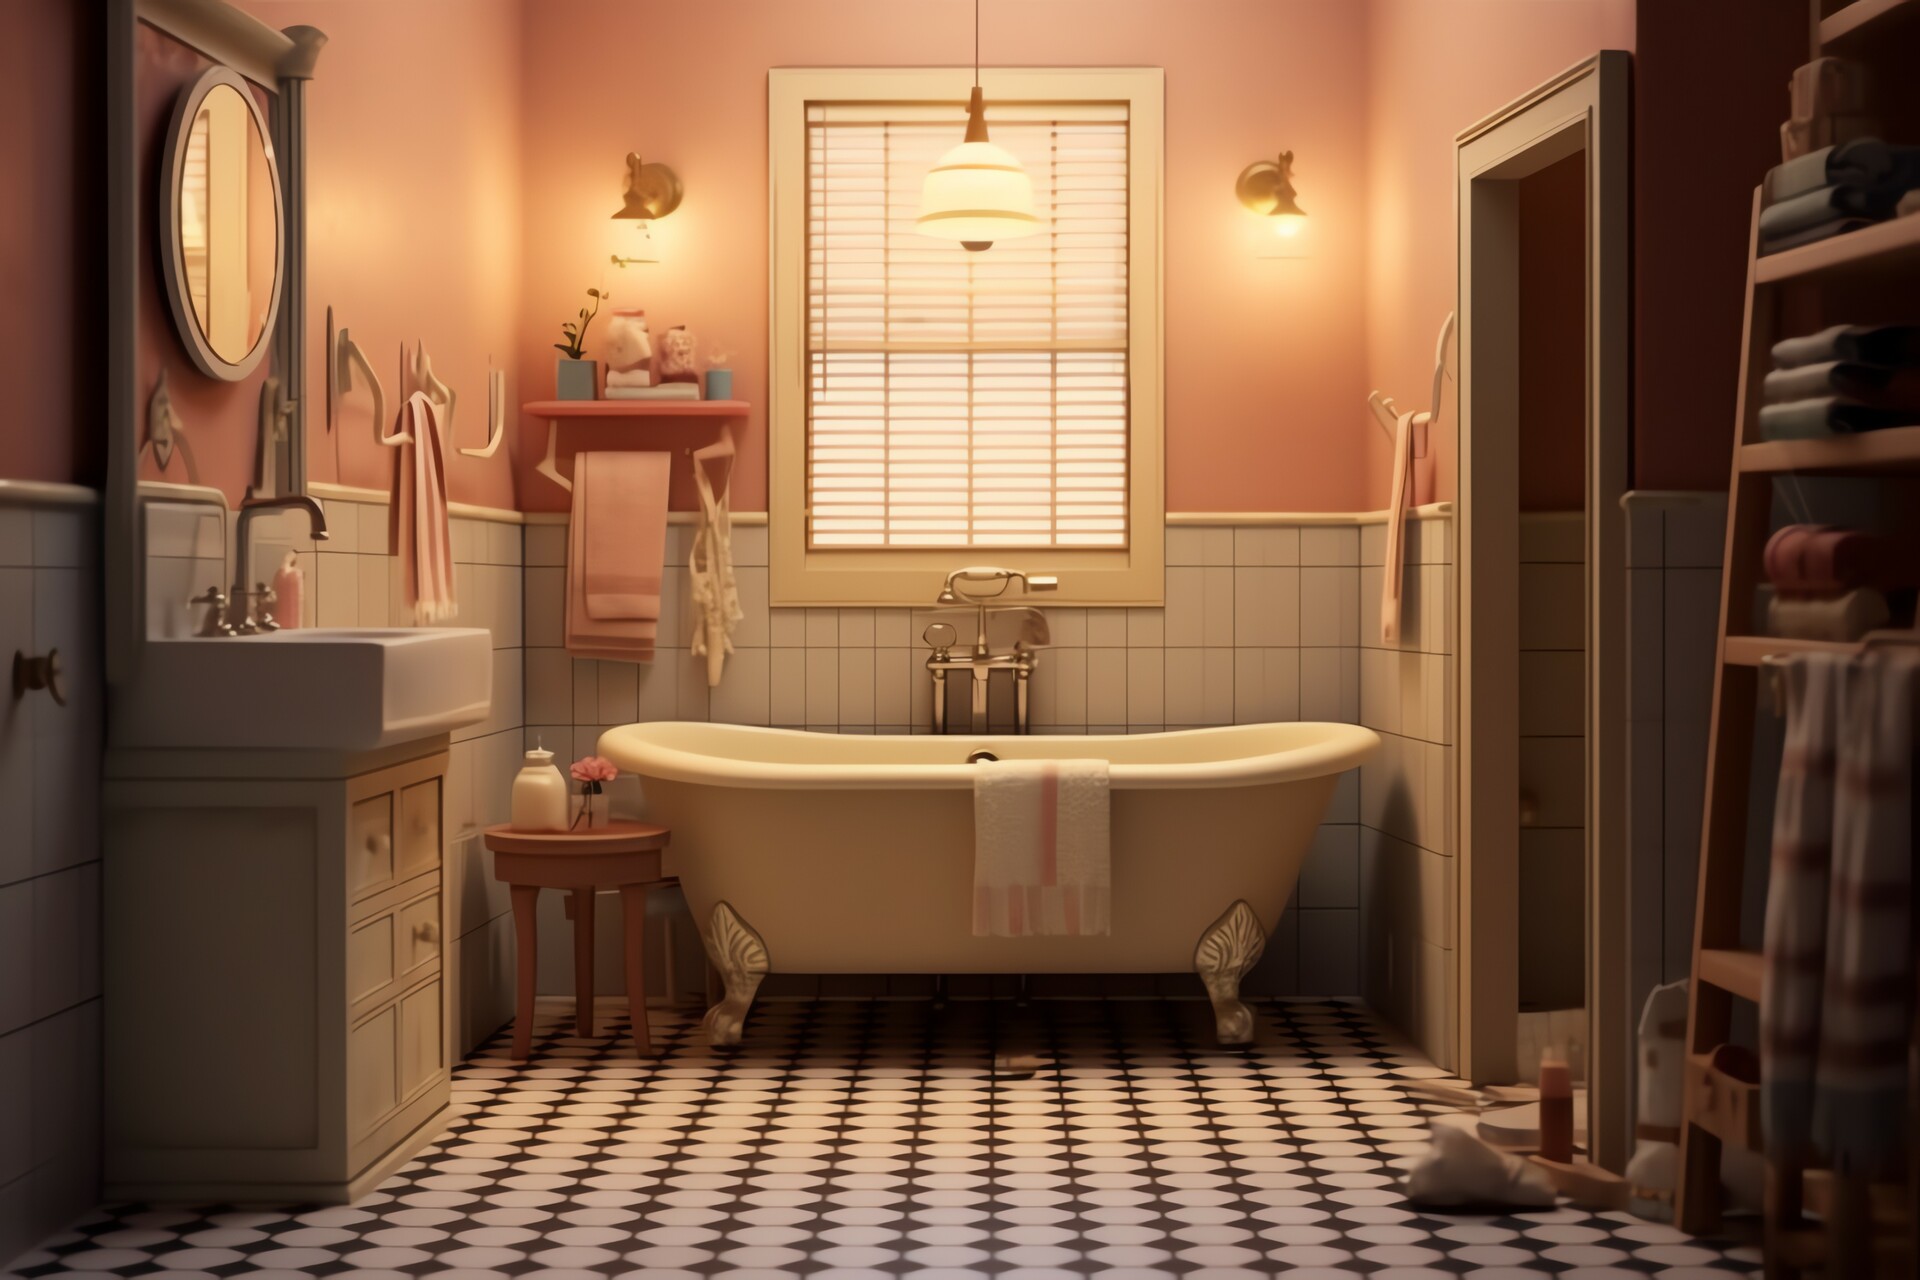 Obrazek ukazuje urokliwą łazienkę, w której centralnym elementem jest przepiękna wanna. Wanna wyróżnia się swoim designerskim kształtem i wykończeniem, dodając elegancji i luksusu całej przestrzeni. Otaczające ją płytki o delikatnym wzorze oraz harmonijne połączenie kolorów tworzą atmosferę relaksu i spokoju, zapraszając do odprężających kąpieli